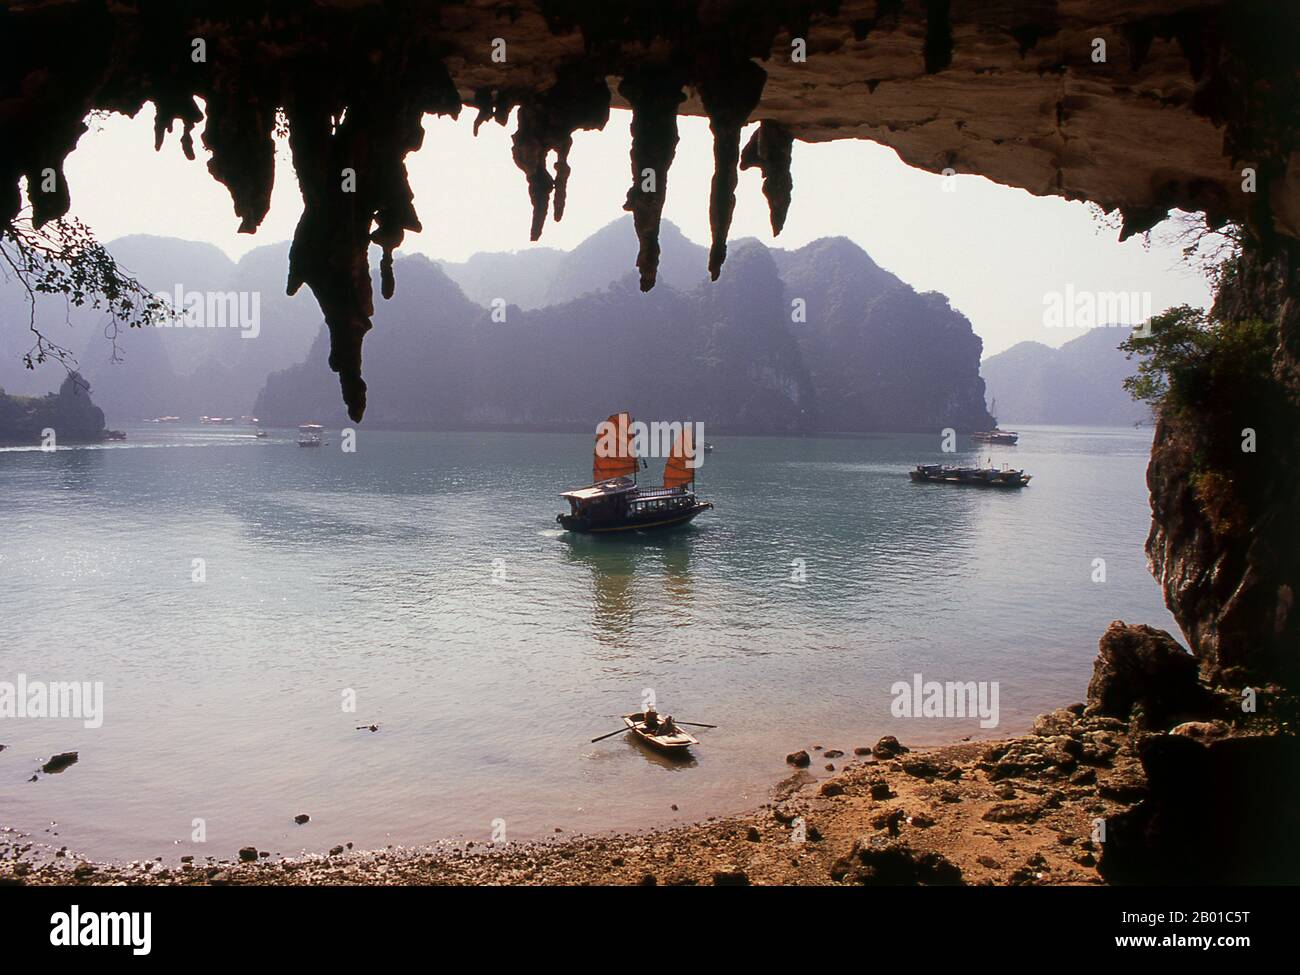 Vietnam : une malbouffe vue de la grotte Hang Bo Nau, baie de Halong, province de Quang Ninh. Dans les ha vietnamiens, on entend longtemps le « dragon en train de devenir », et la légende veut que la baie de Halong ait été formée par un dragon gigantesque qui a plongé dans le golfe de Tonkin, créant des milliers de affleurements calcaires par l’amarrage de sa queue. Les géologues ont tendance à rejeter cette théorie, en faisant valoir que la myriade d'îles qui bordent la baie d'Halong et s'étendent jusqu'à la frontière chinoise, sont le produit de l'érosion sélective des fonds marins pendant des millénaires. Banque D'Images